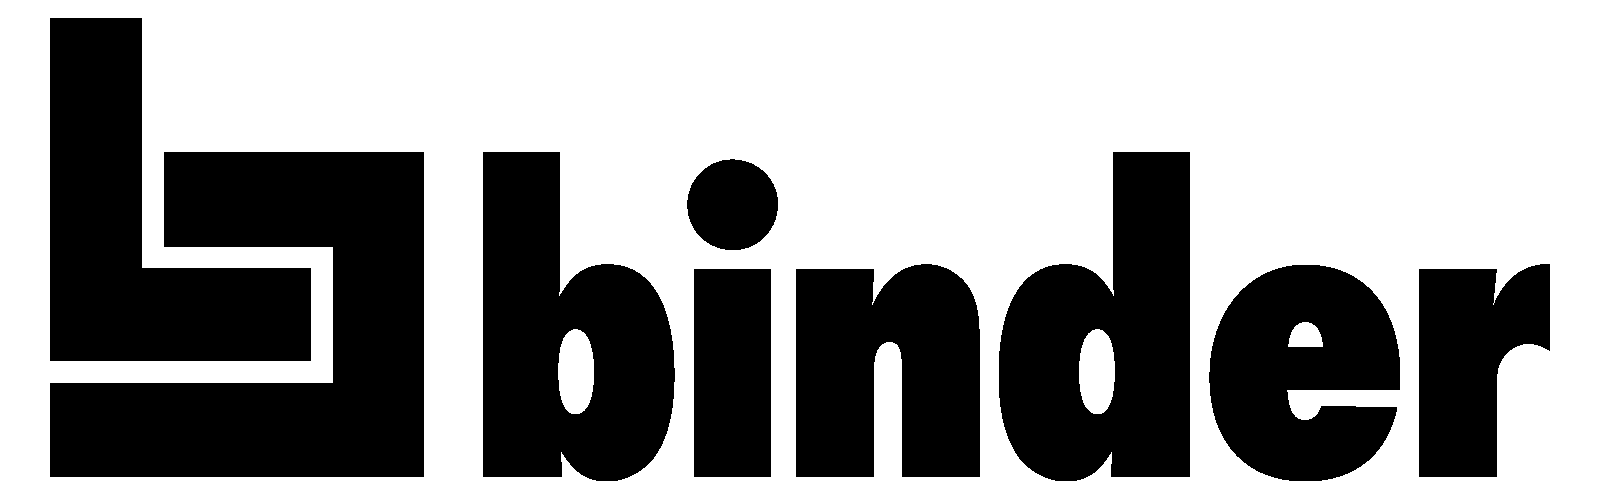 Logo Binder